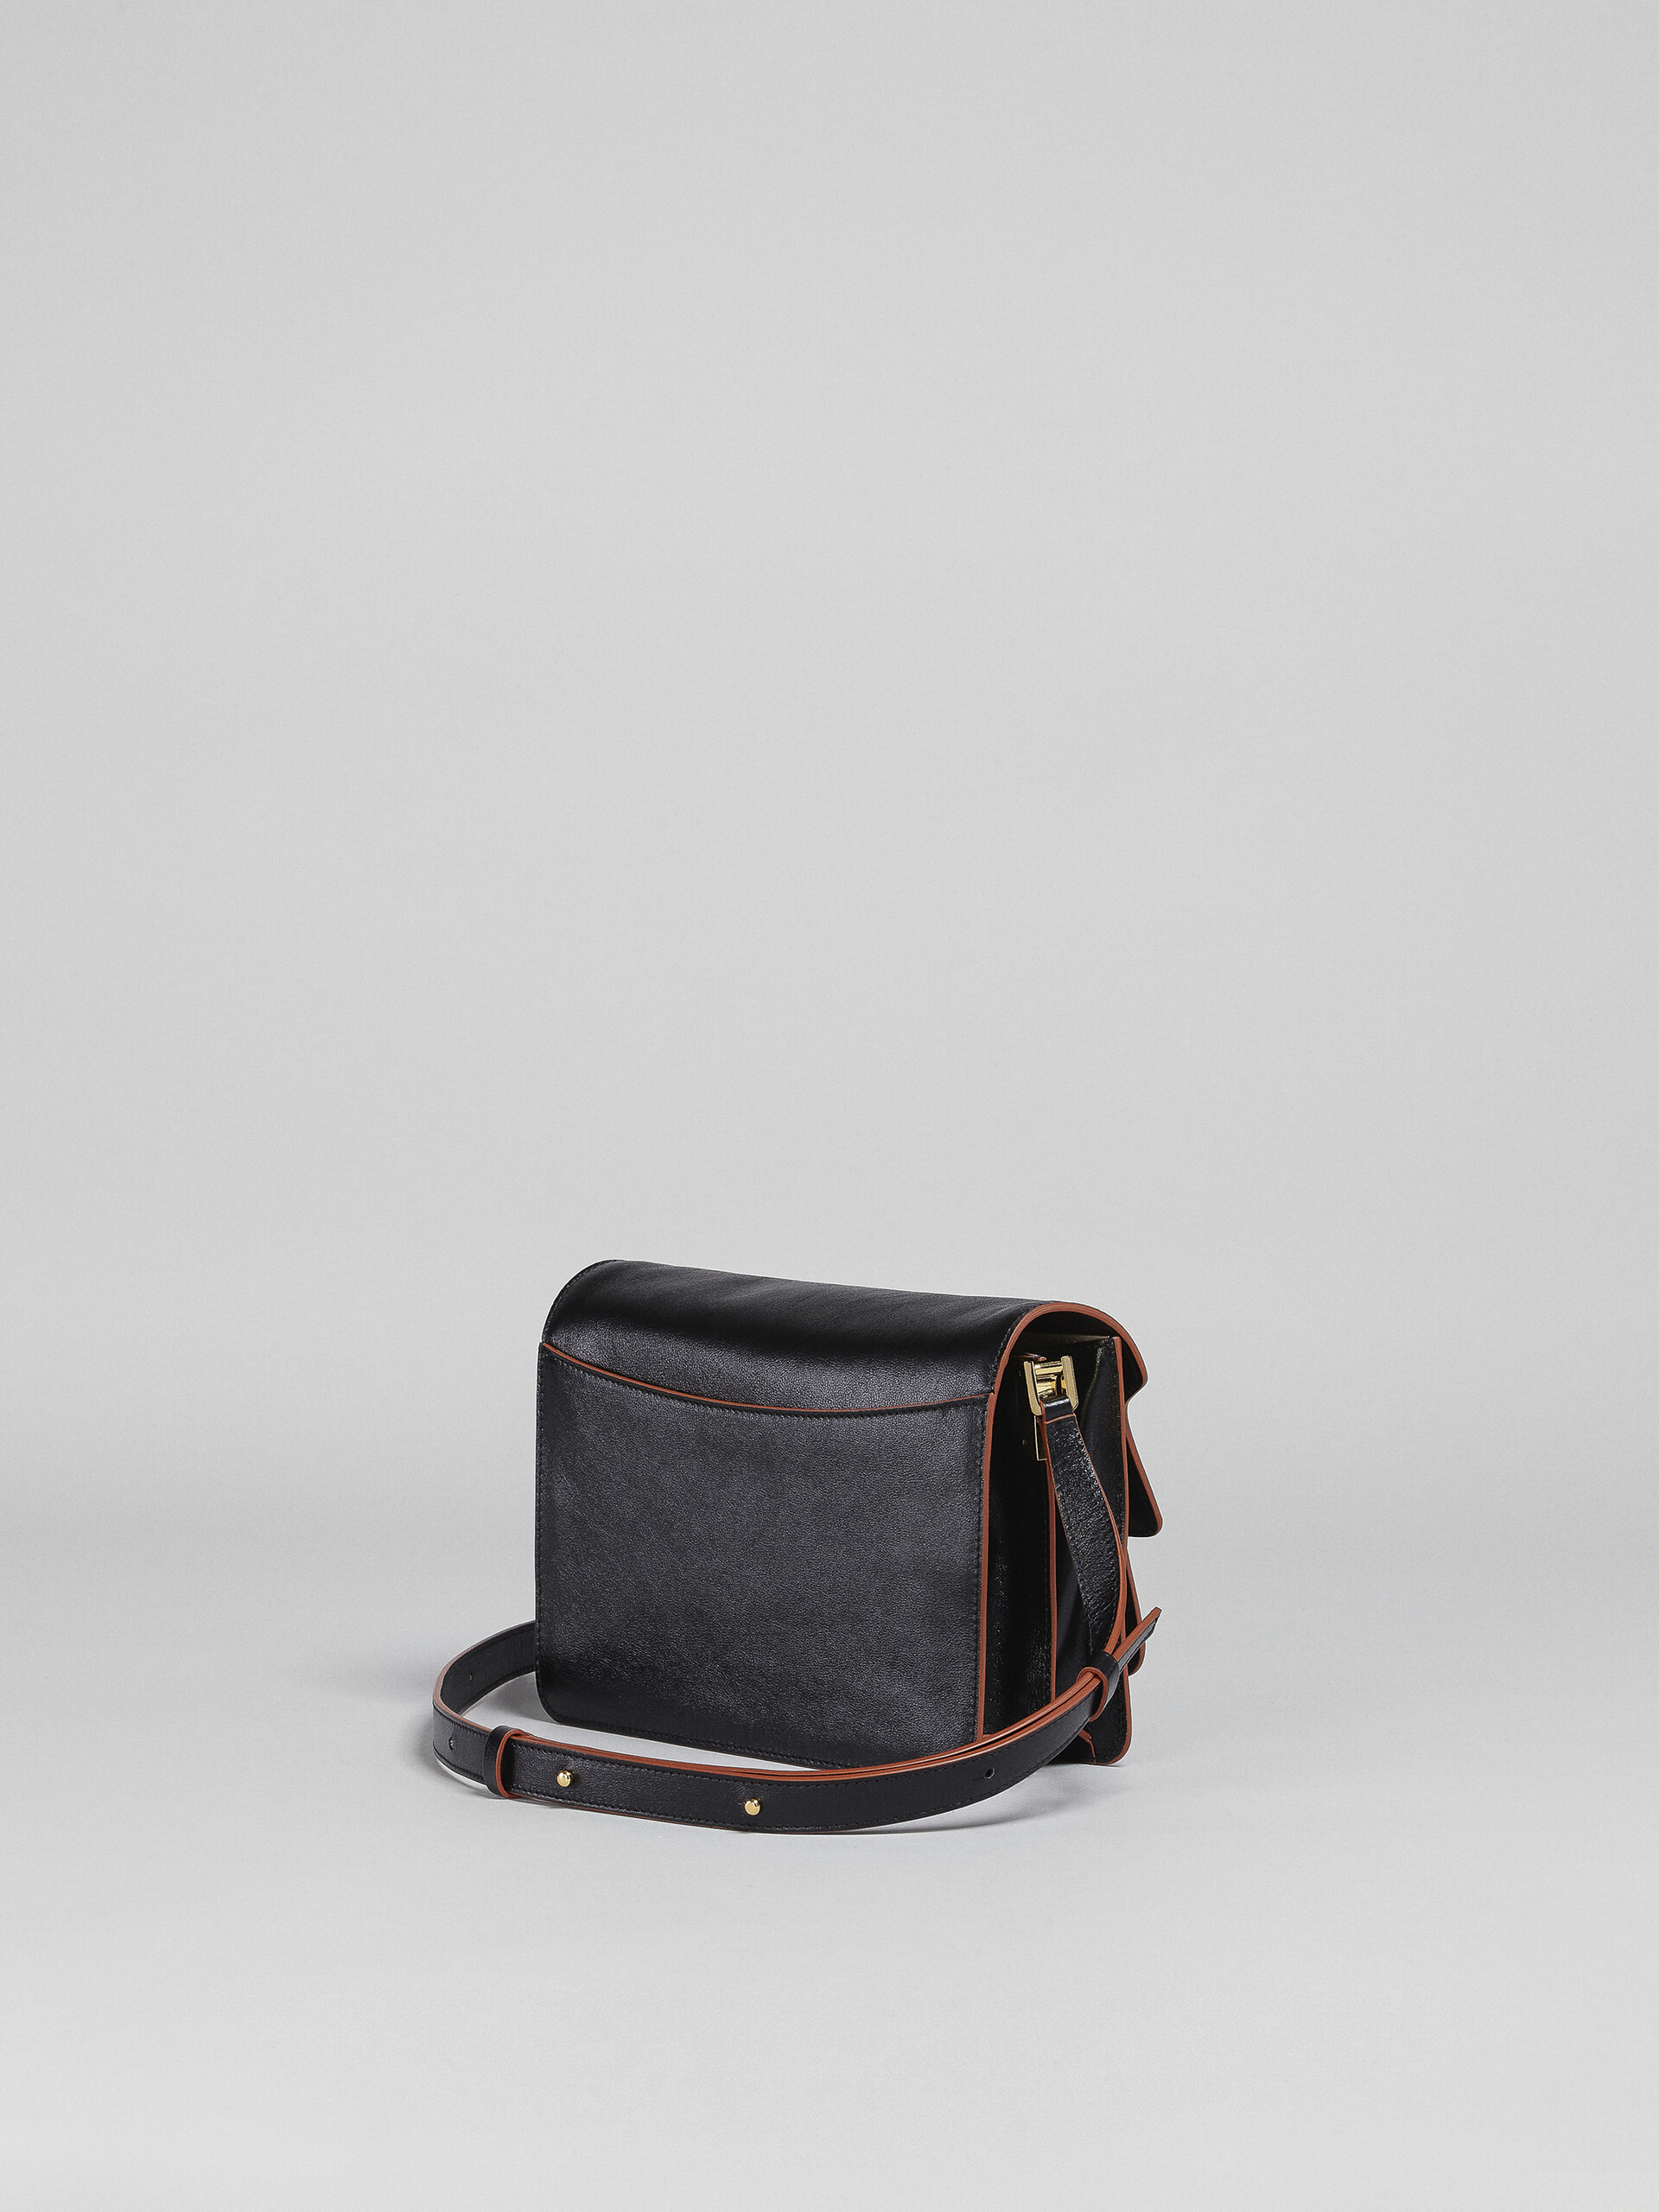 TRUNK SOFT medium bag in black leather - Shoulder Bags - Image 3